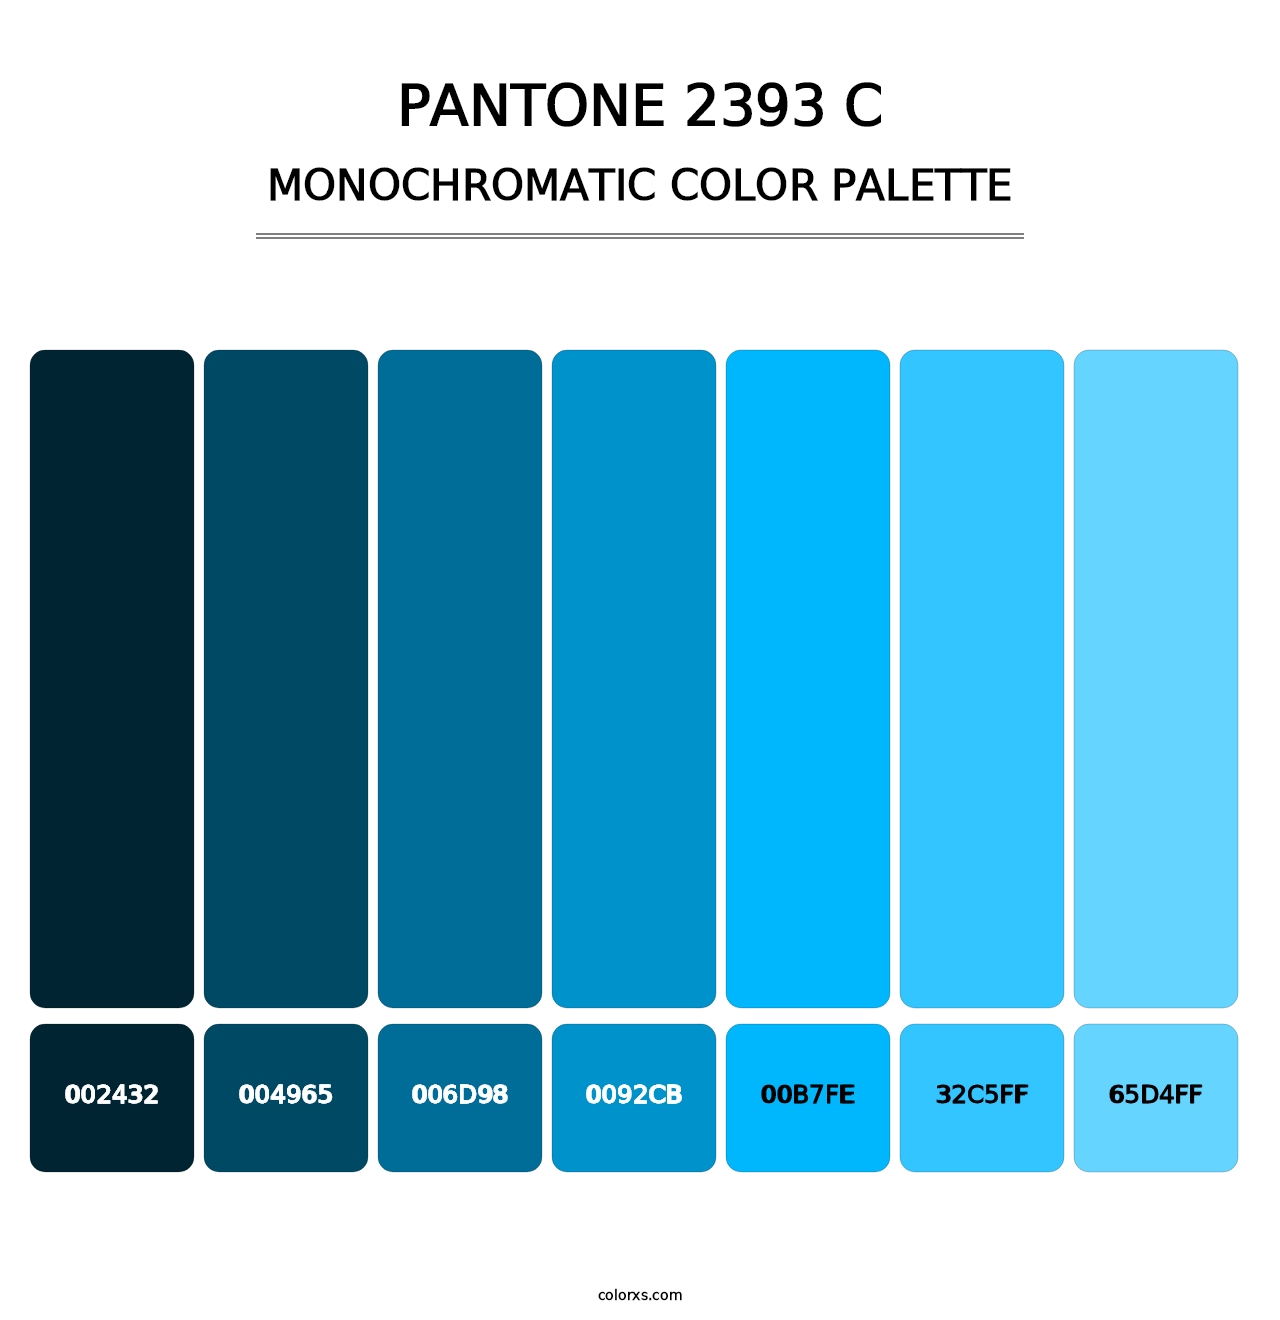 PANTONE 2393 C - Monochromatic Color Palette